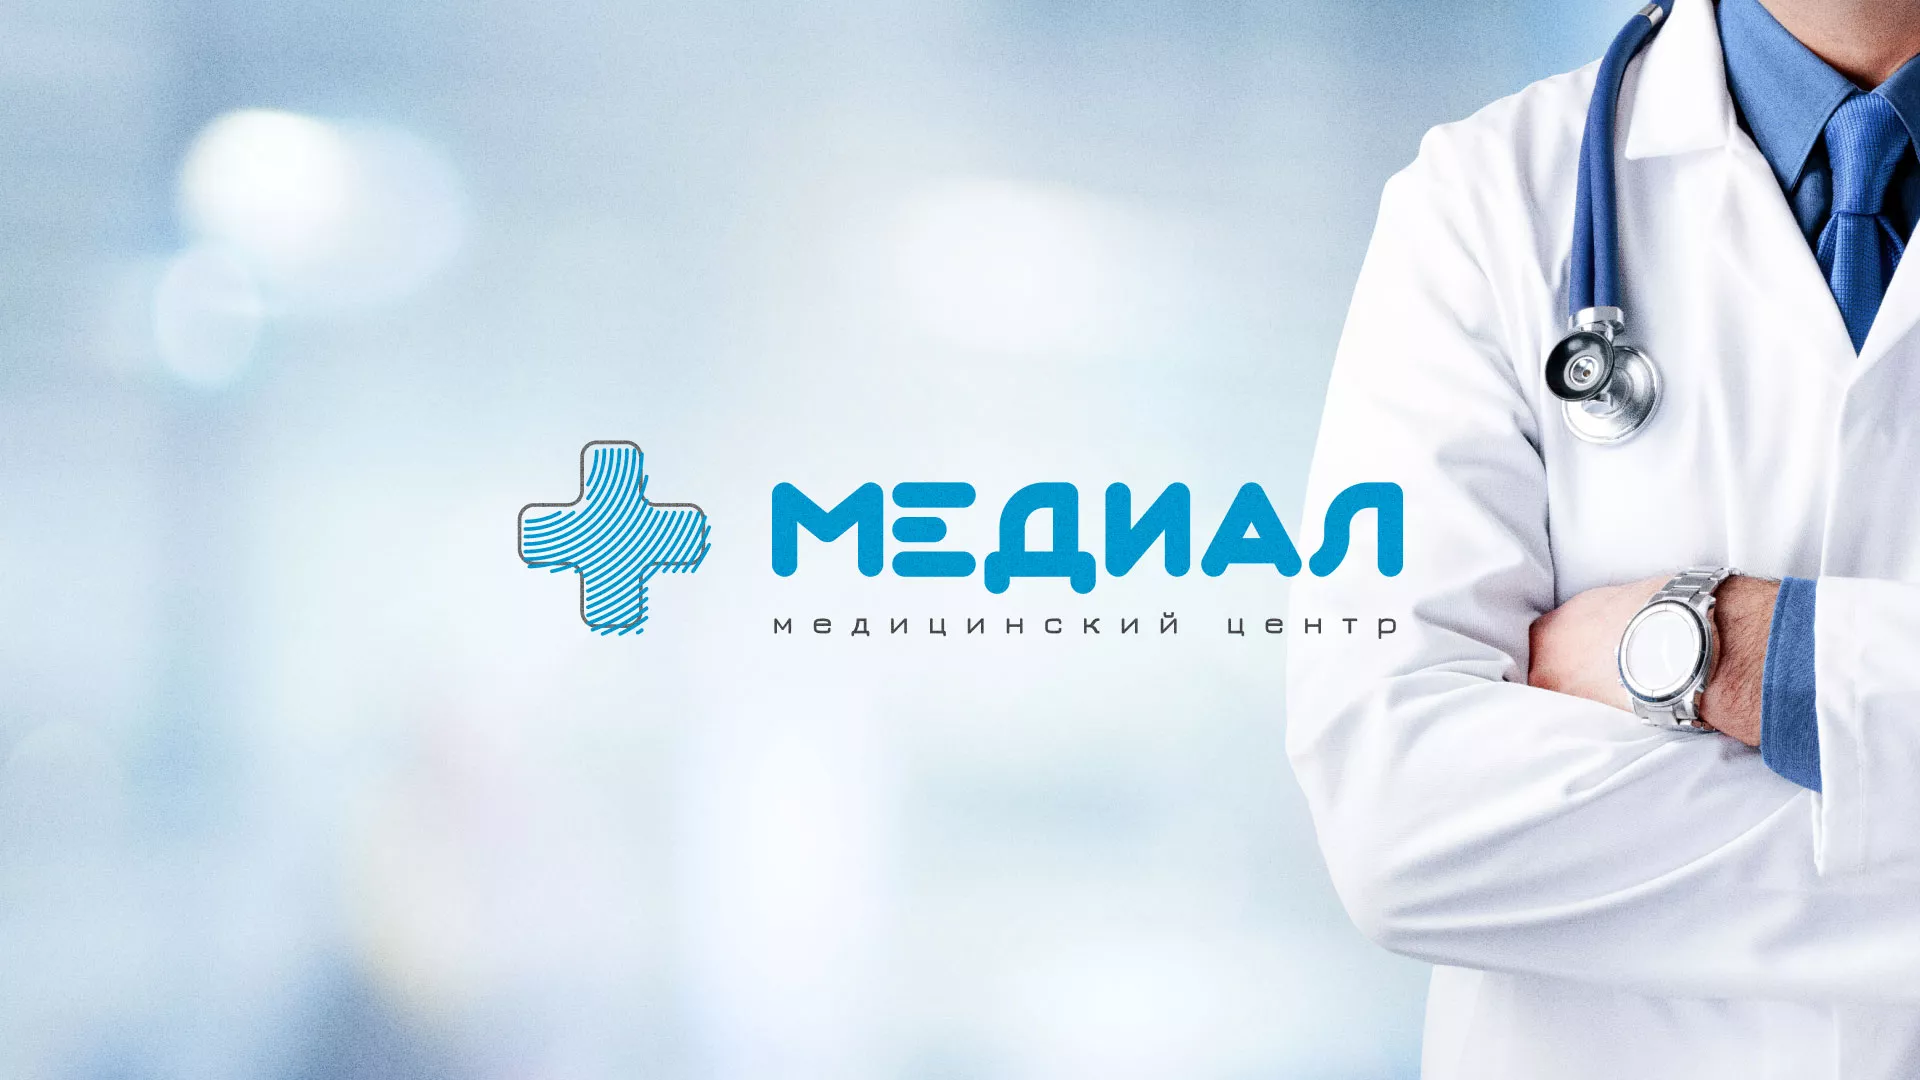 Создание сайта для медицинского центра «Медиал» в Медногорске